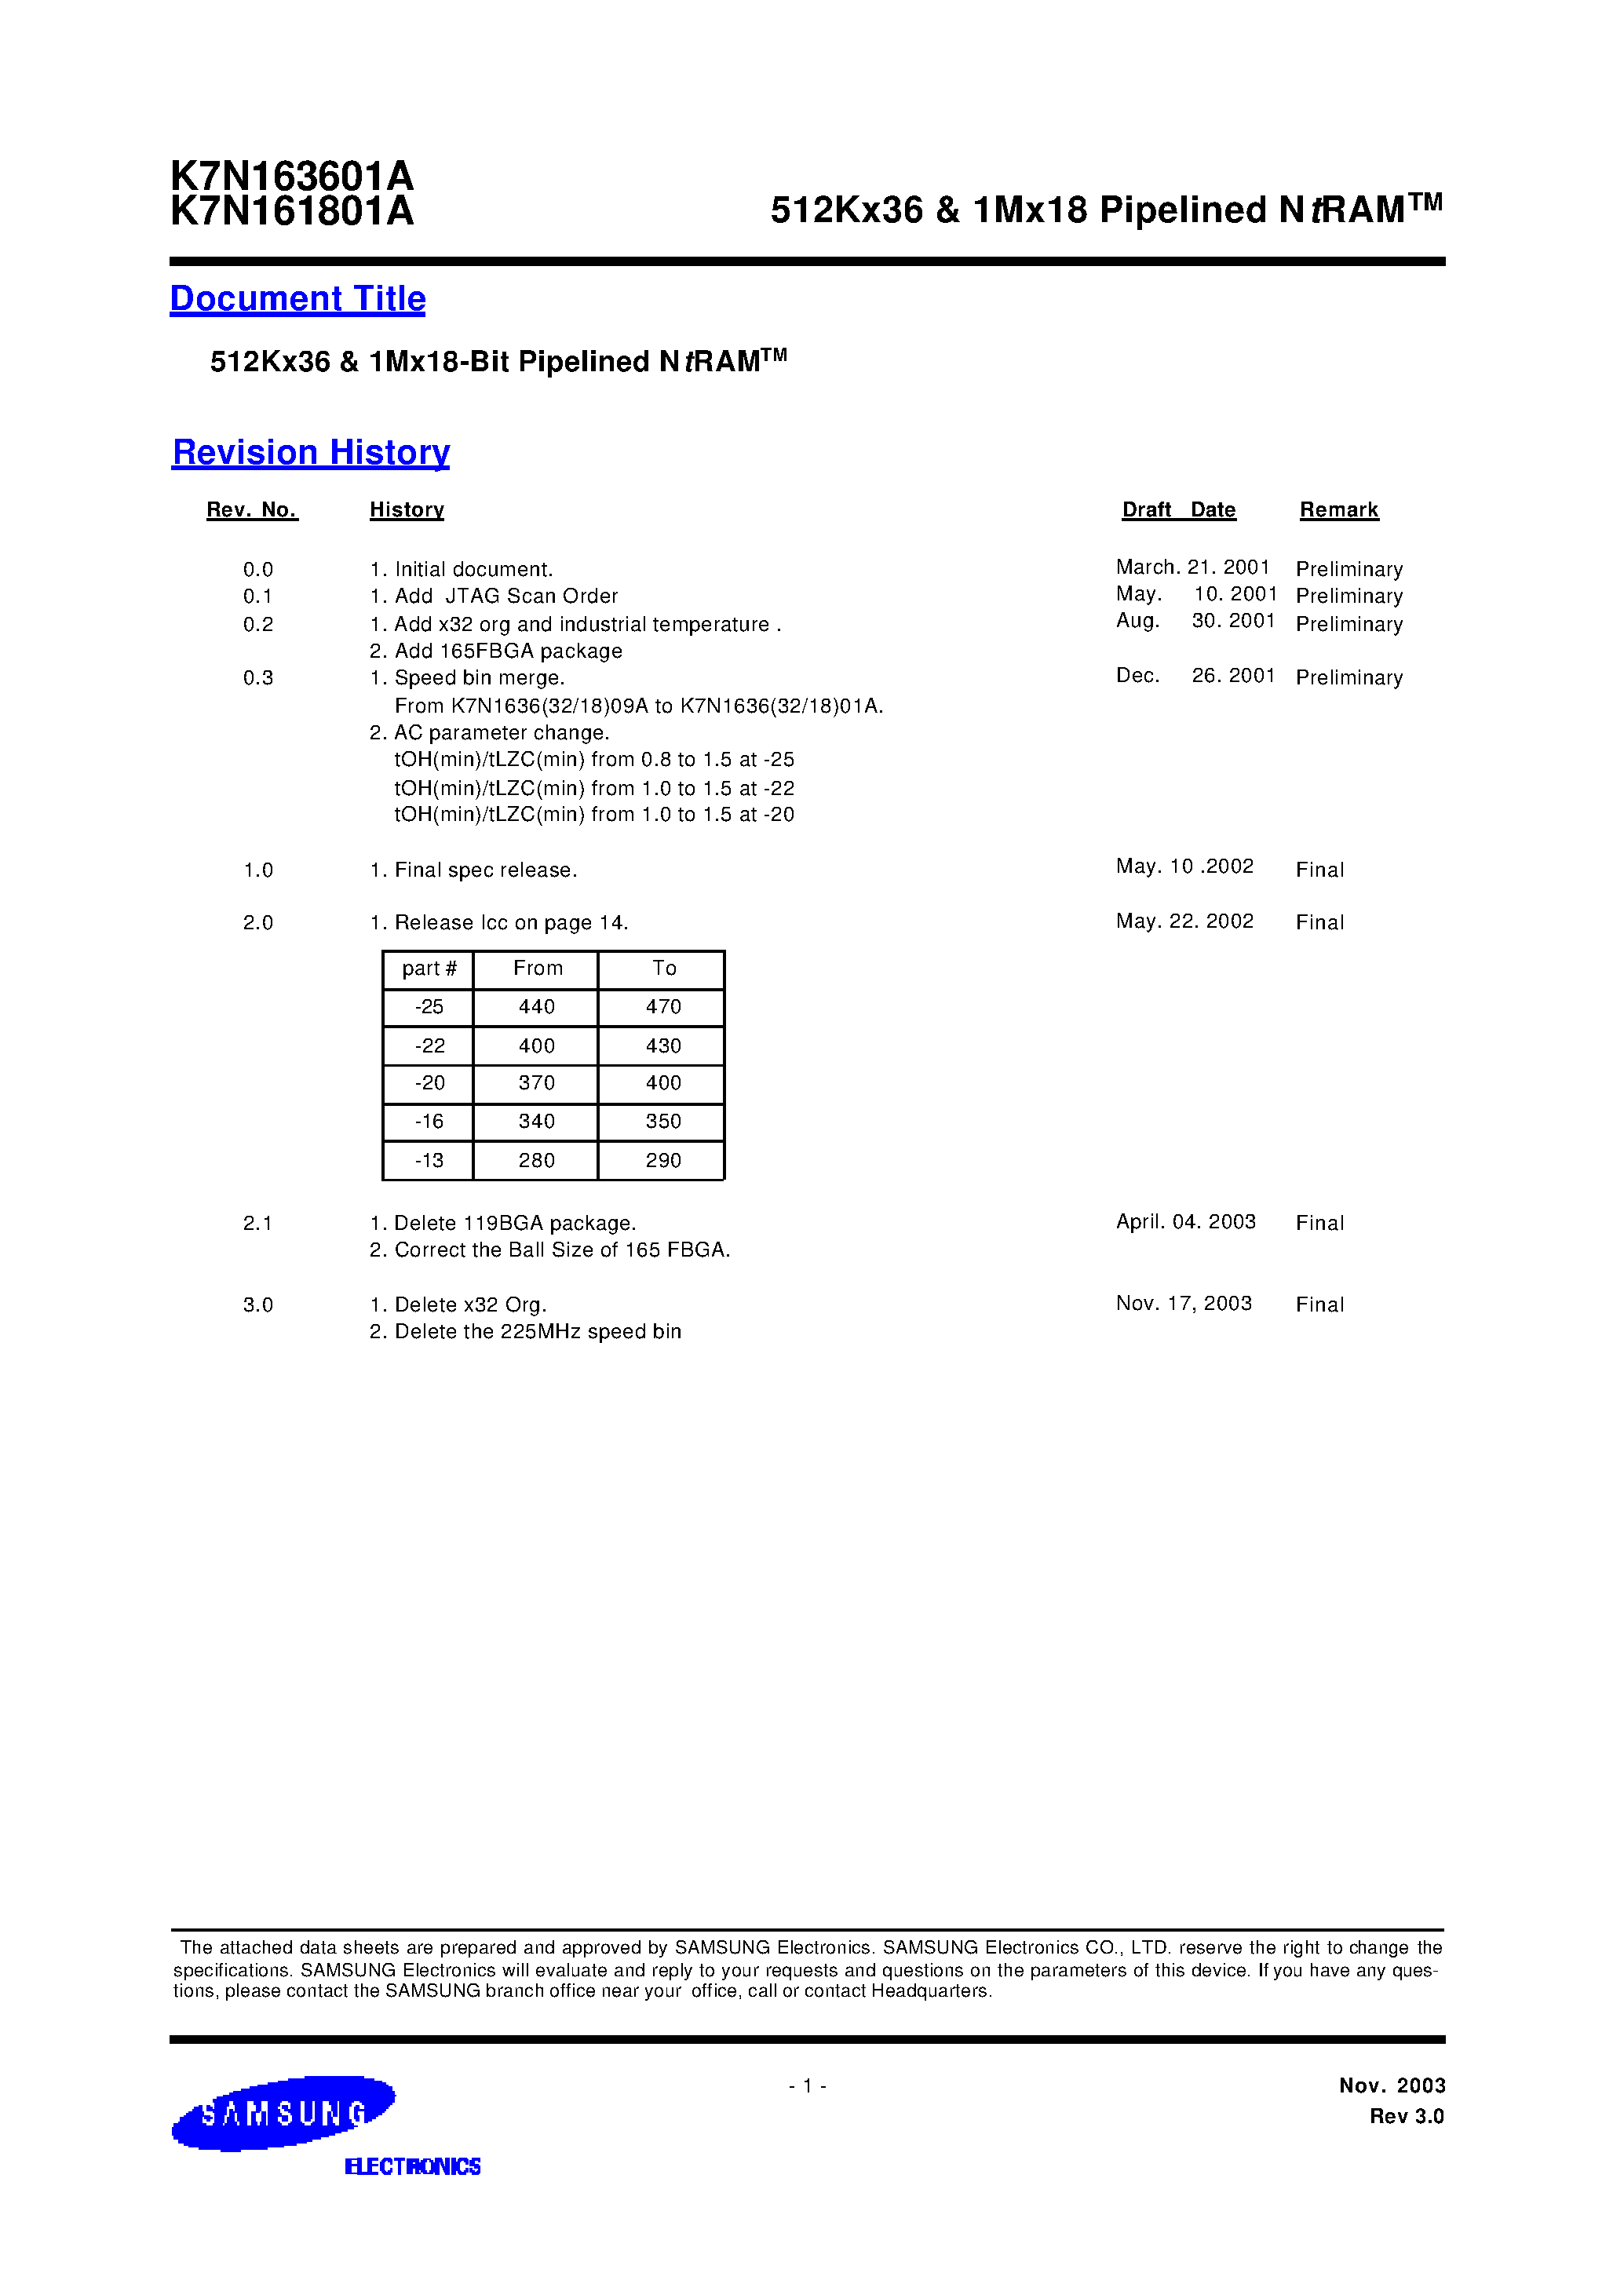 Даташит K7N163601A-Q(F)C(I)13-512Kx36 & 1Mx18 Pipelined NtRAM страница 1